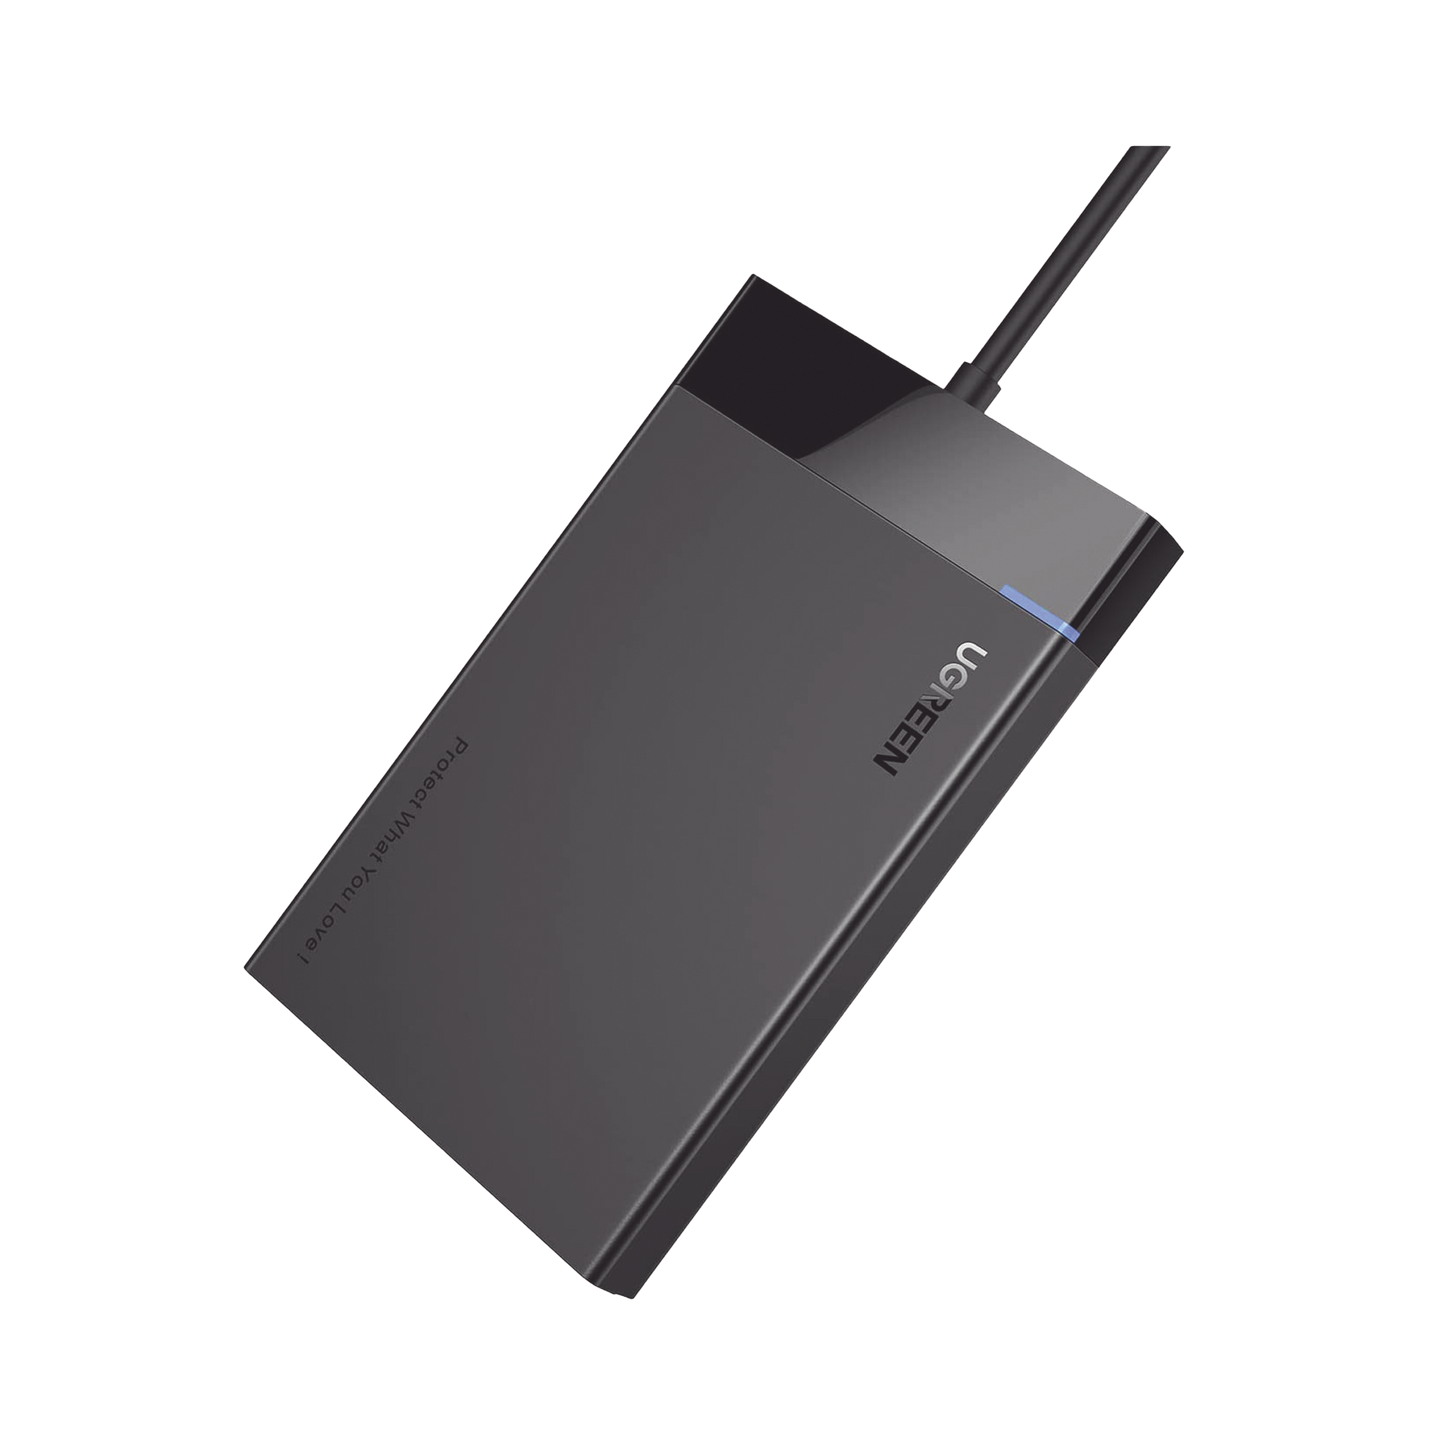 Carcasa de Disco Duro 2.5'' (Enclosure) / Velocidad SATA 3.0 de hasta 6 Gbps / Compatible con SATA 2.0/1.0 / Velocidad USB 3.0 de hasta 5 Gbps / Compatible con USB 2.0 y 1.1 / SATA I II III, HDD, SSD de hasta 10TB